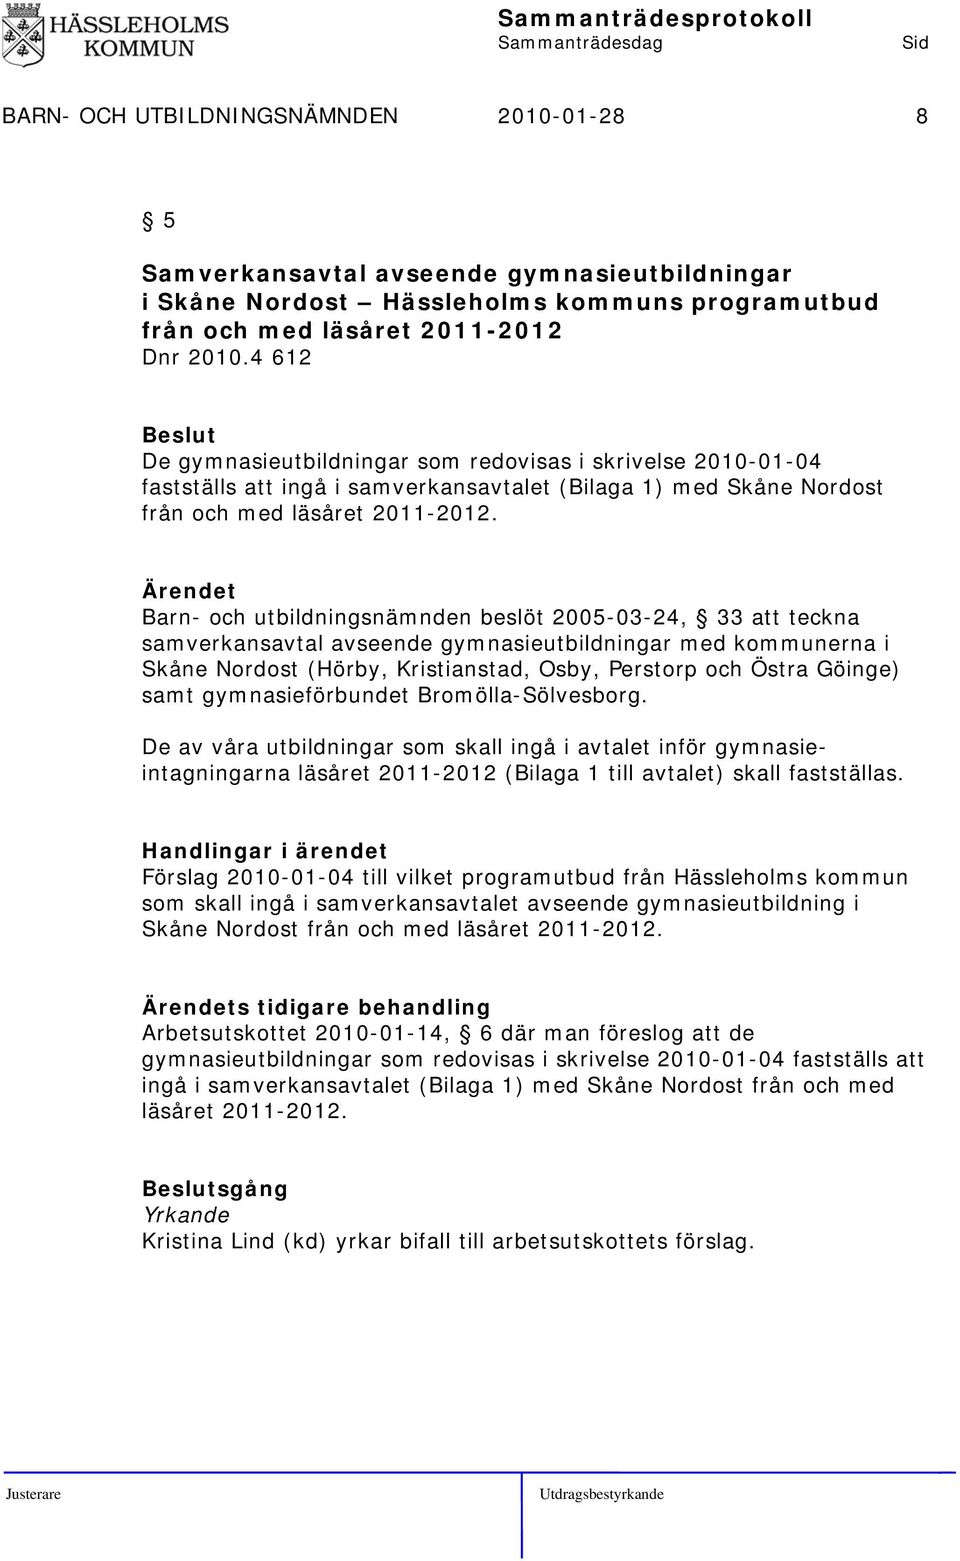 Barn- och utbildningsnämnden beslöt 2005-03-24, 33 att teckna samverkansavtal avseende gymnasieutbildningar med kommunerna i Skåne Nordost (Hörby, Kristianstad, Osby, Perstorp och Östra Göinge) samt